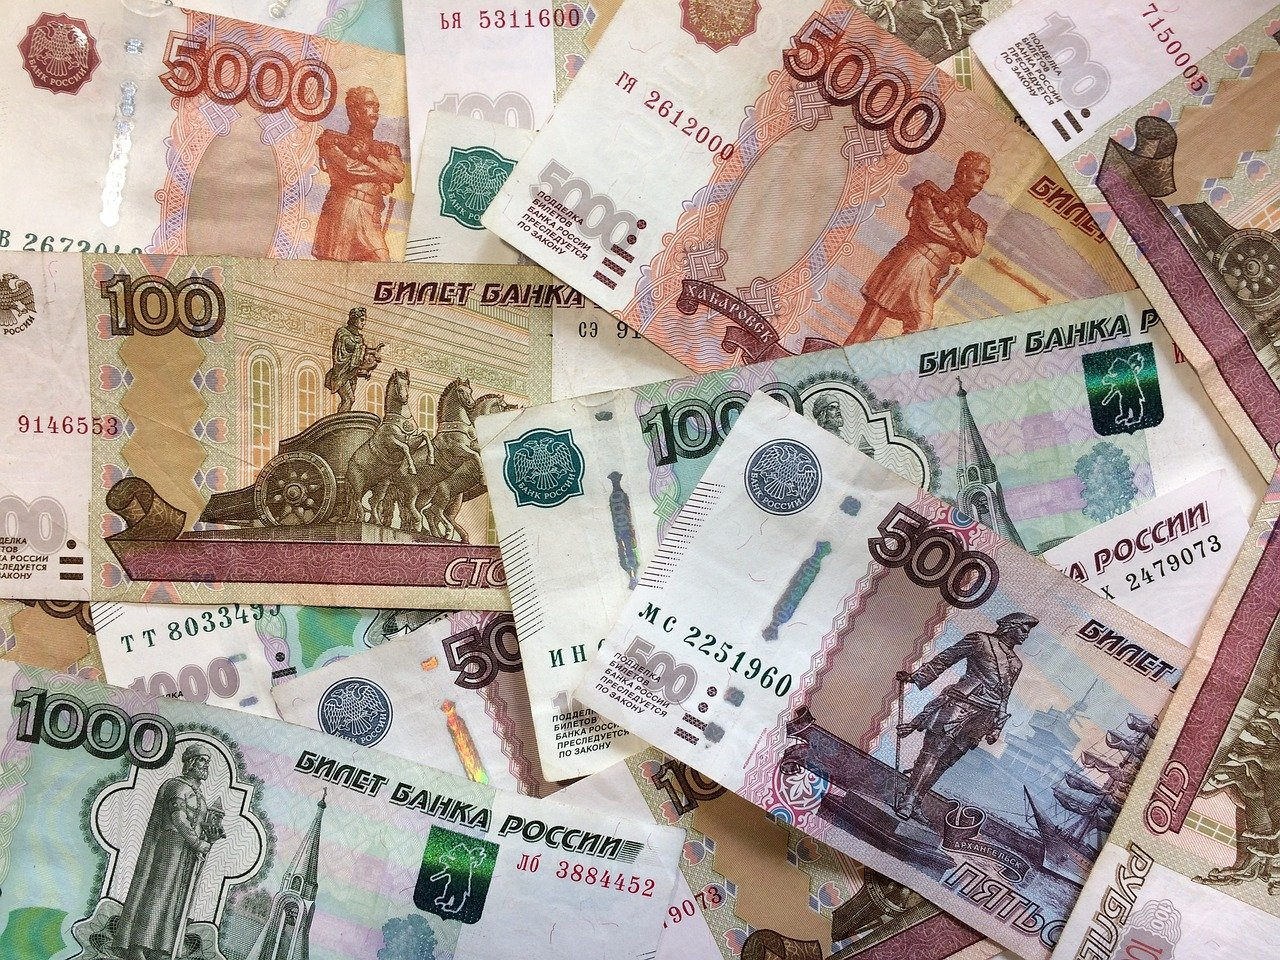 МВД предупреждает о мошенниках, которые собирают деньги на лечение ребенка из Мордовии